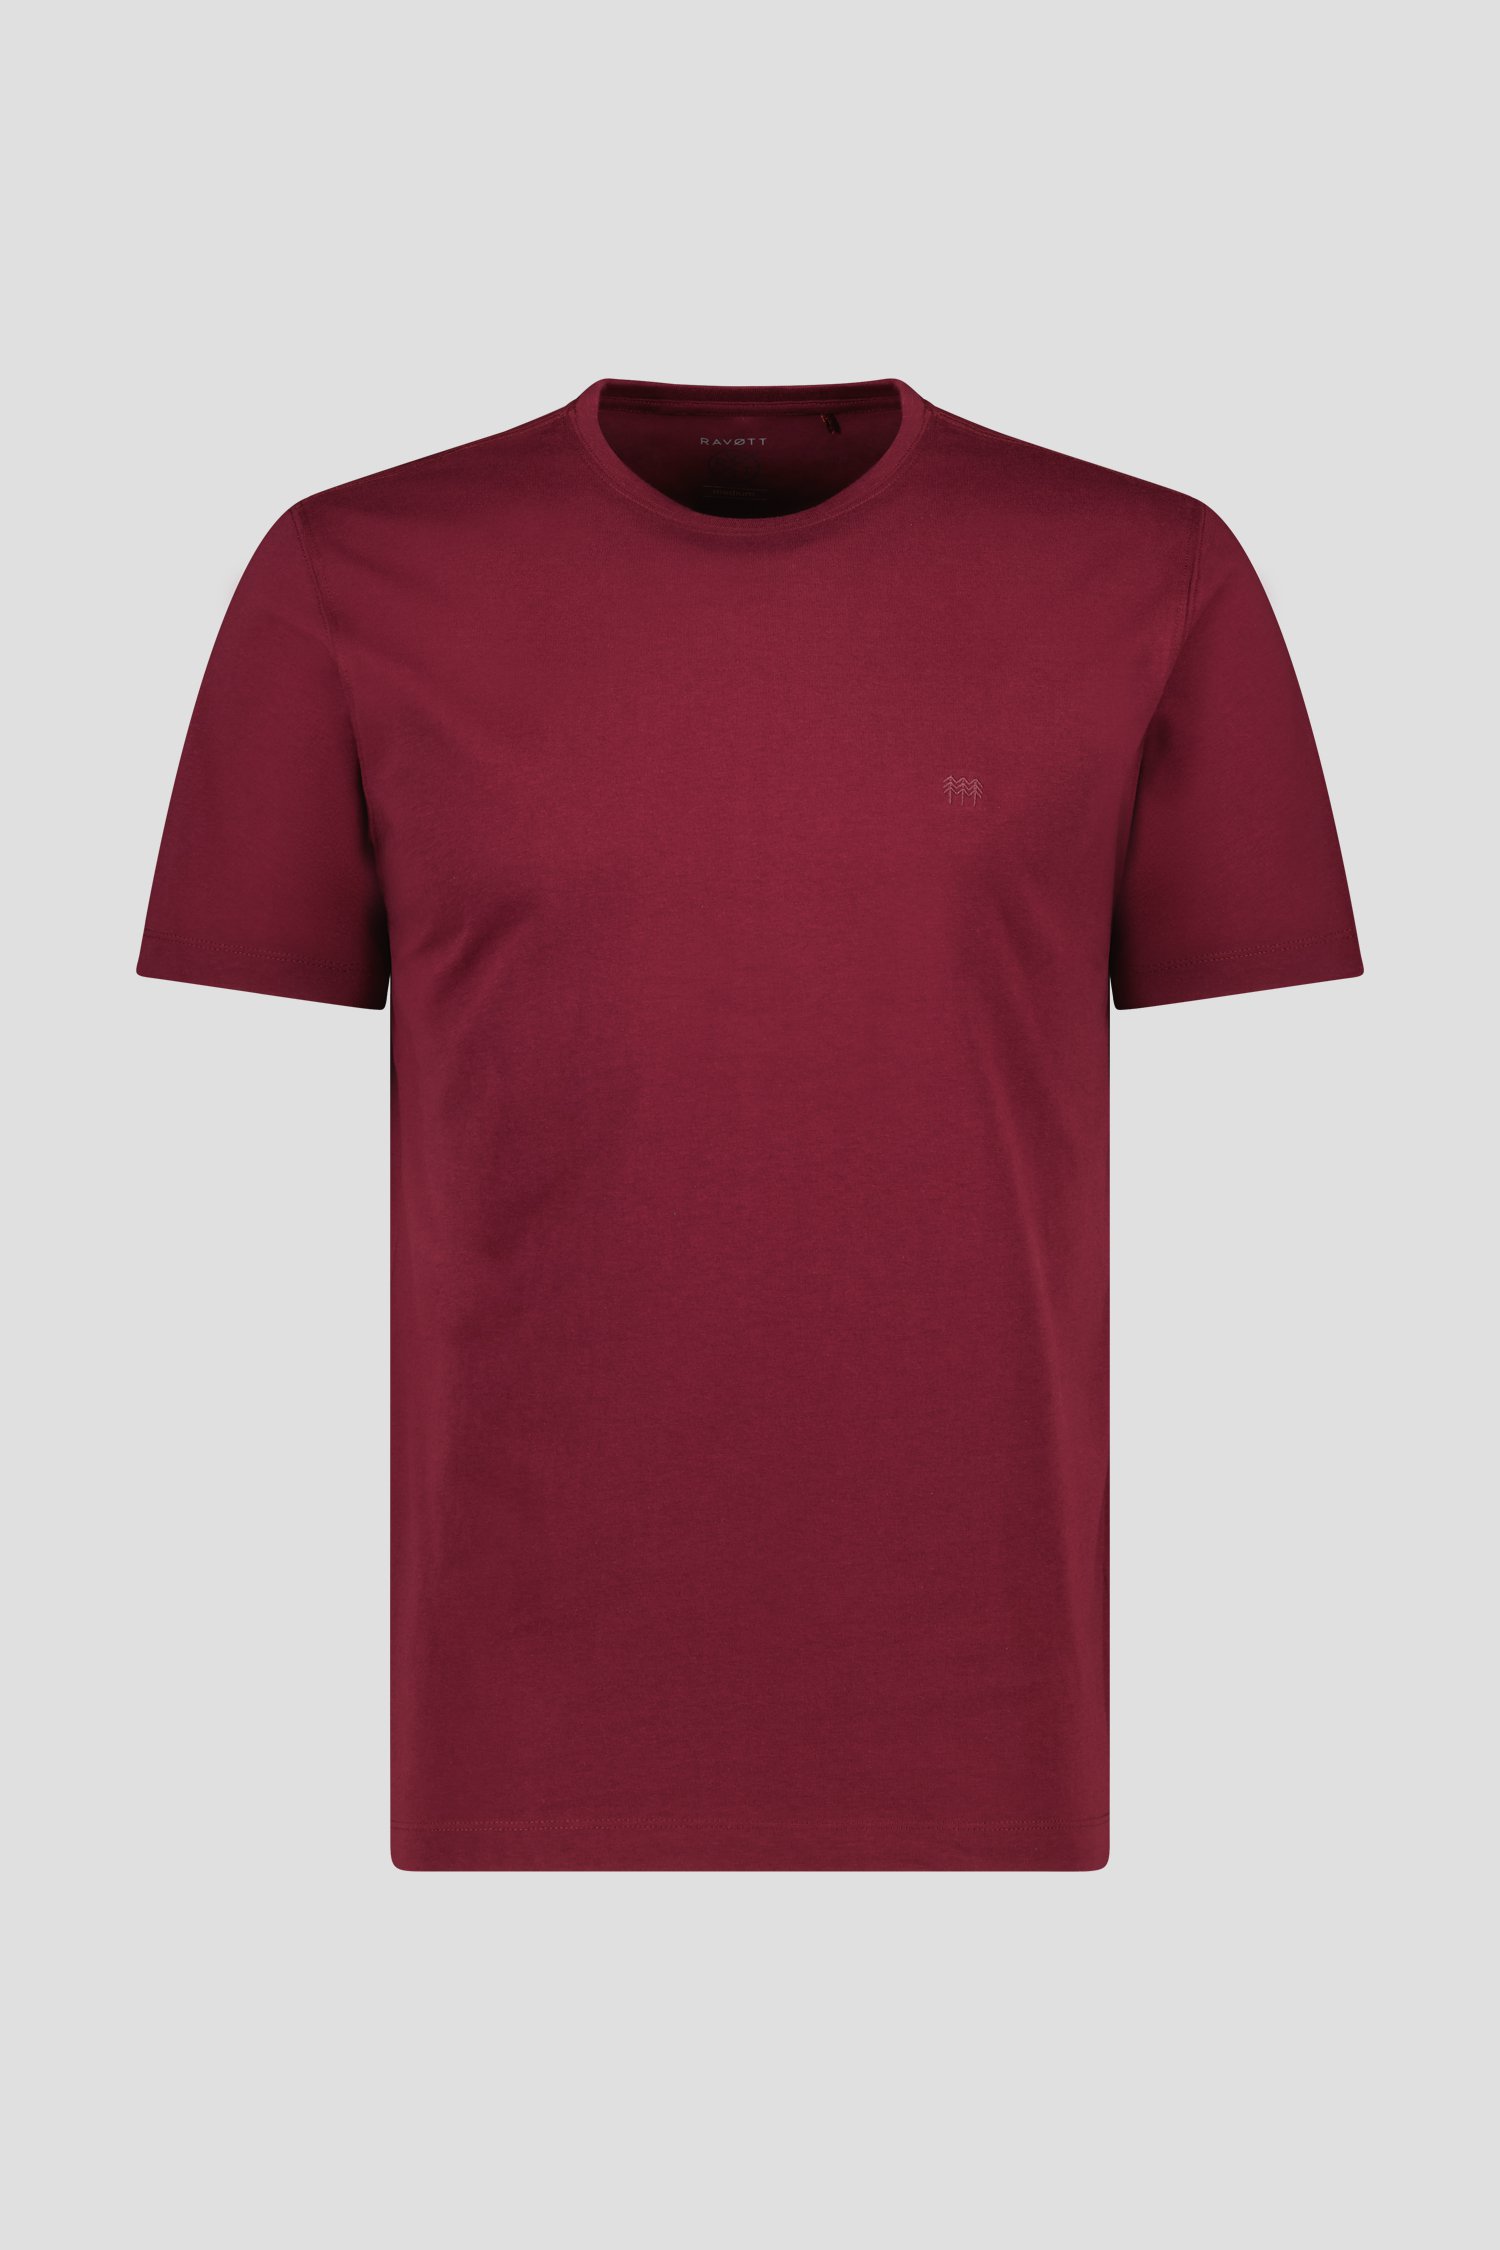 Bordeaux T-shirt met ronde hals van Ravøtt voor Heren